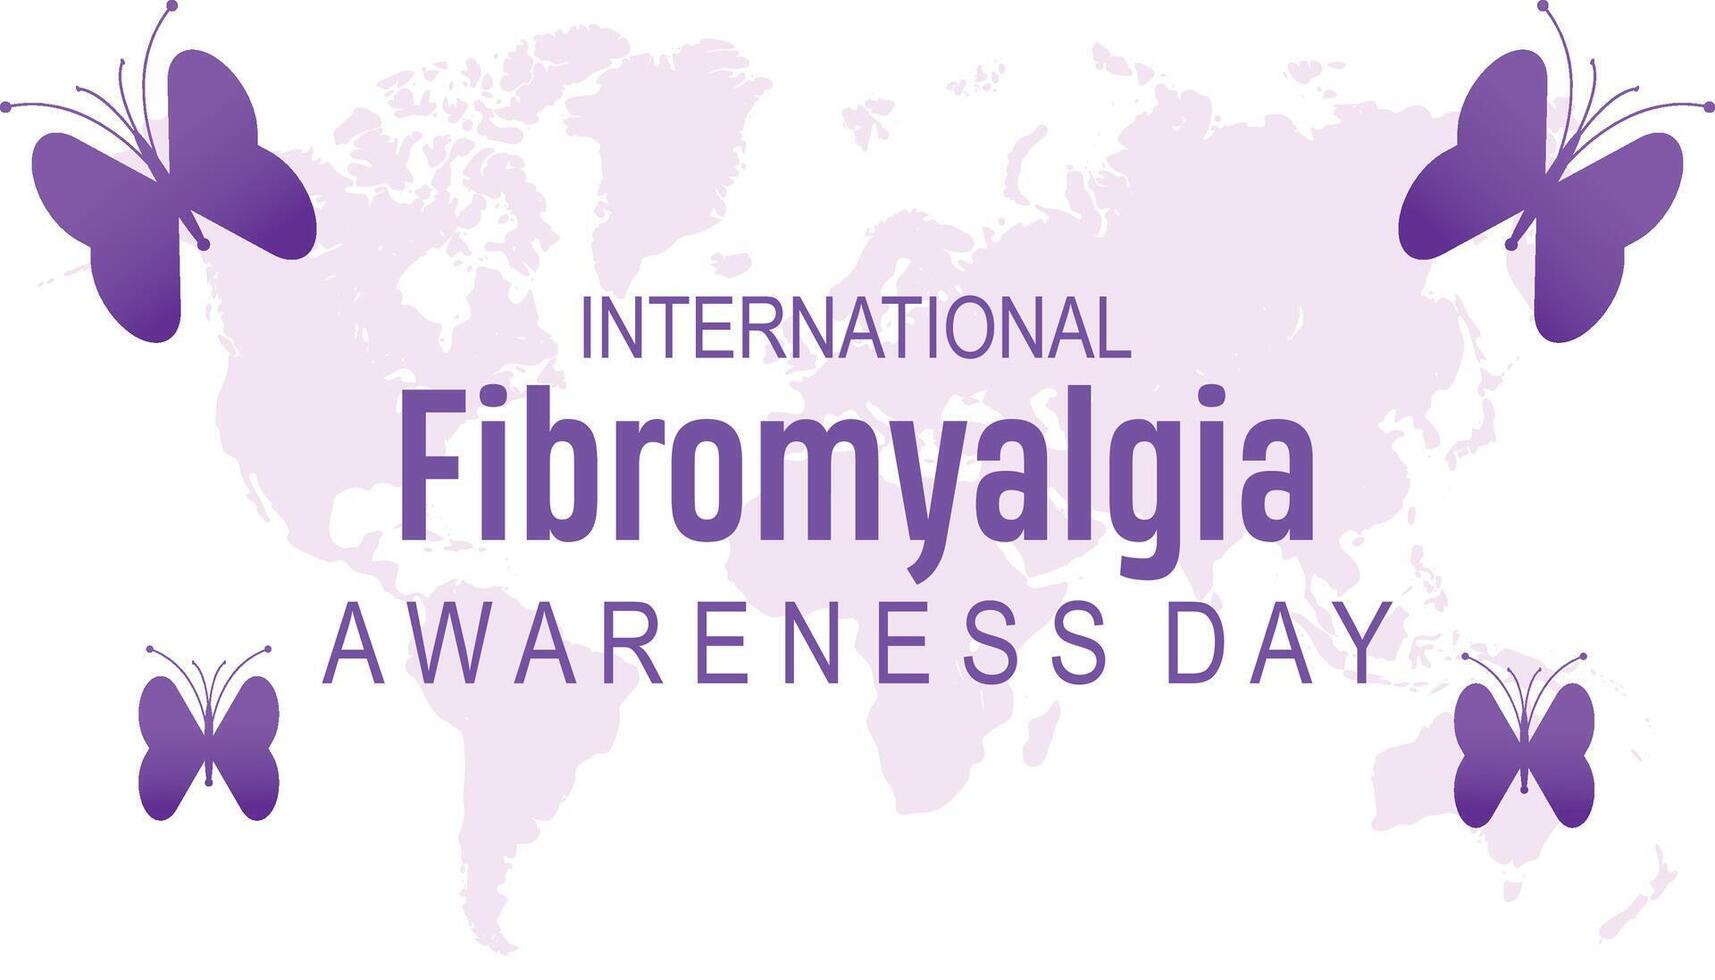 fibromyalgi internationell medvetenhet dag observerats varje år i Maj. mall för bakgrund, baner, kort, affisch med text inskrift. vektor